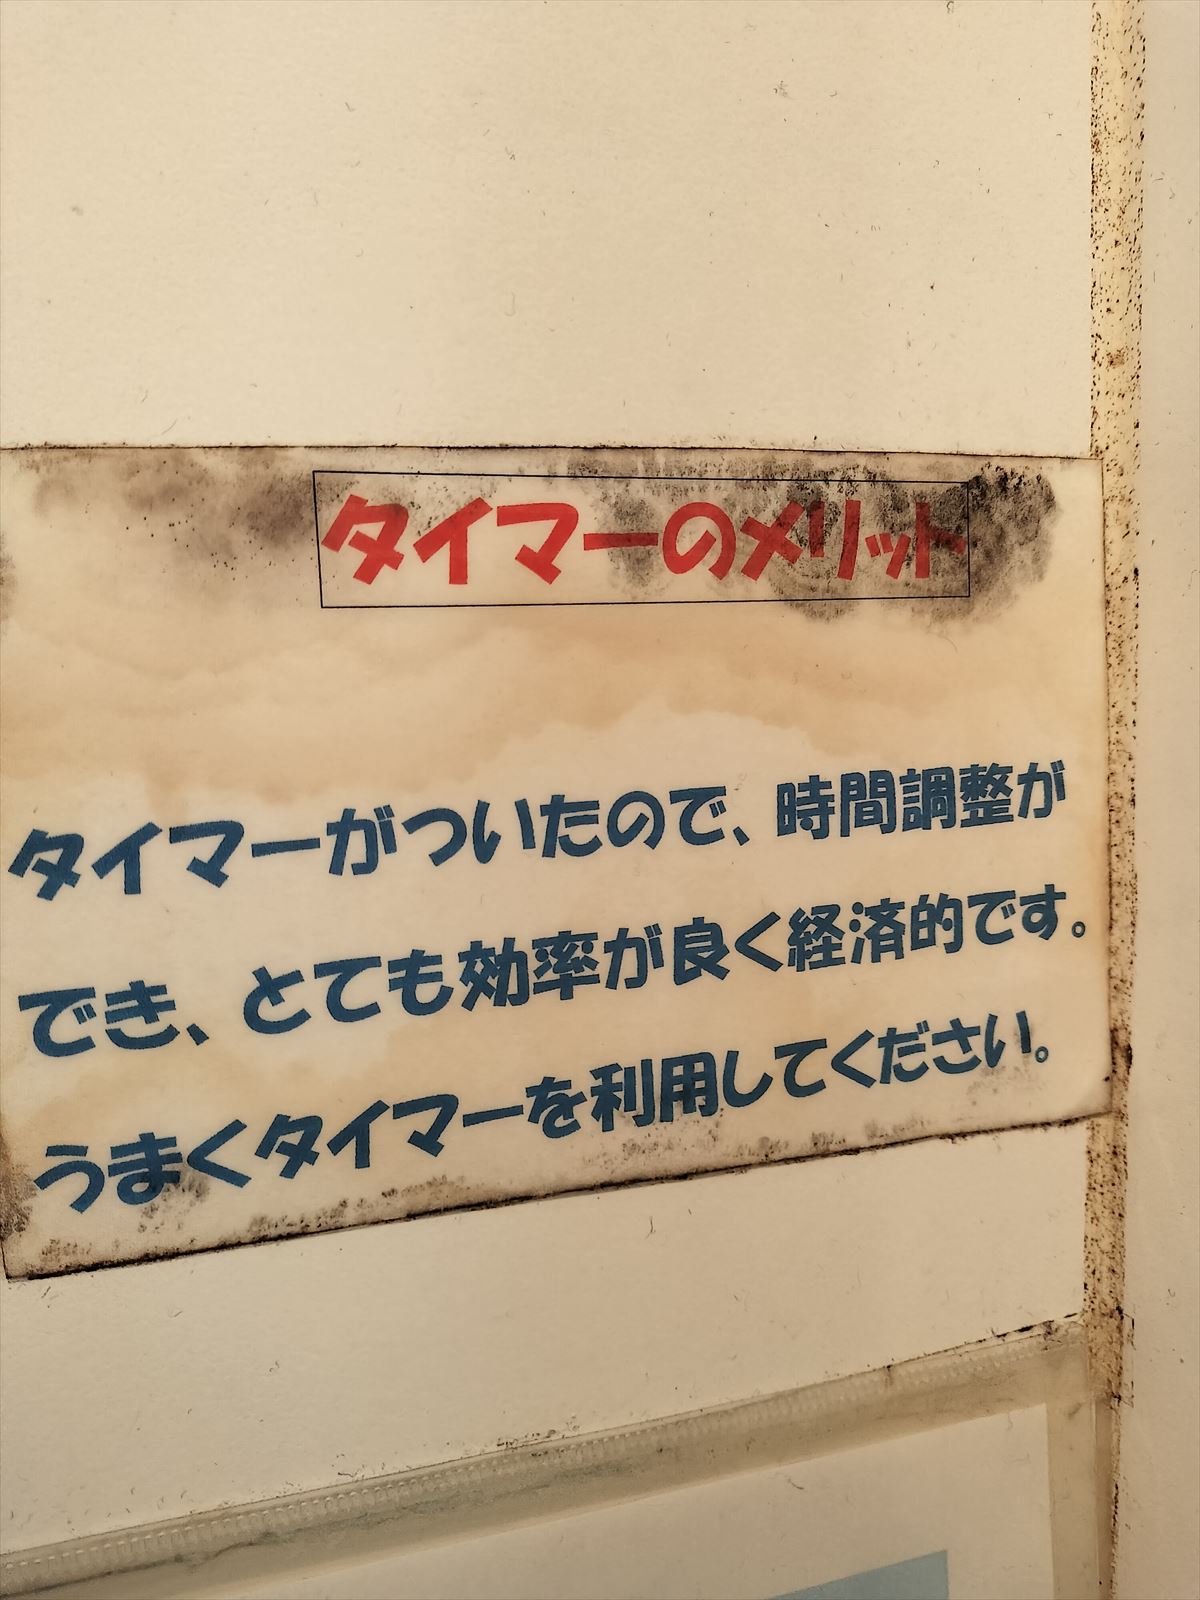 オードリーの聖地・モンキーシャワーで東京ドームチケット当選の願掛けをしてきた